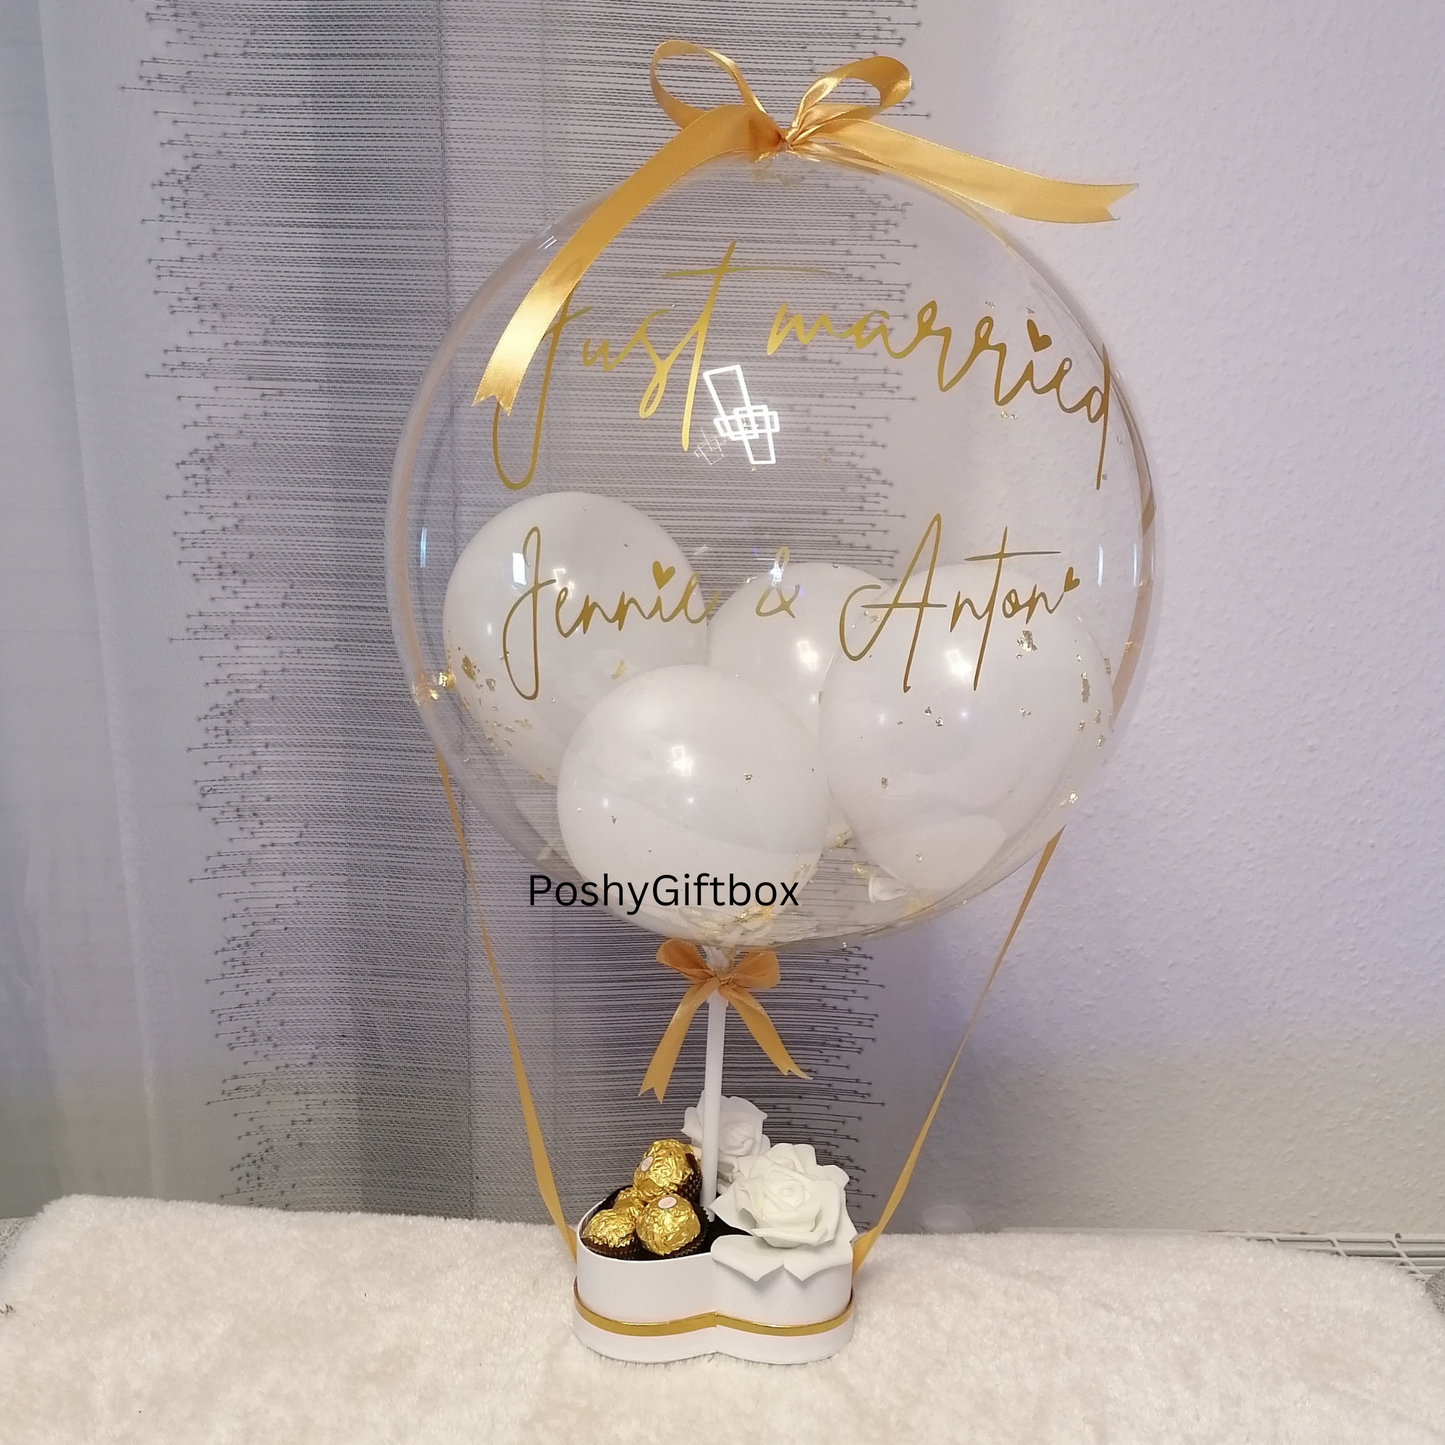 Ballon Geschenk/Valentinsgeschenk/Hochzeitsgeschenk/Geschenkbox für Frauen/Geburtstagsgeschenk Freundin/Mama/Schwester/Gute Besserung  PoshyGiftbox